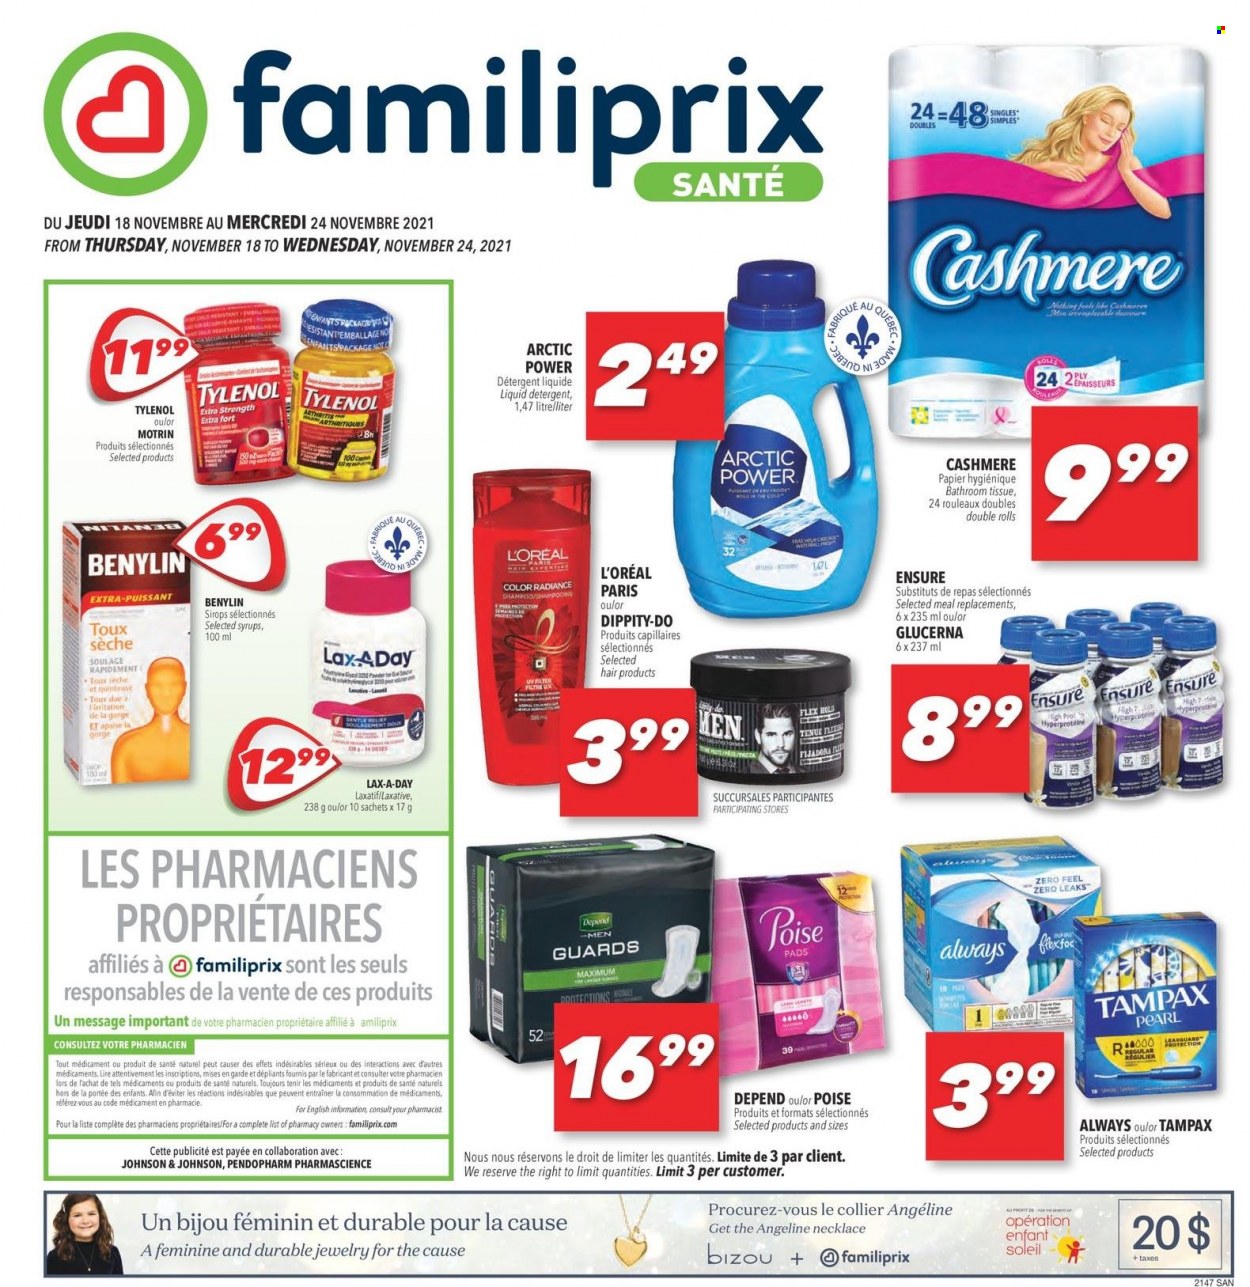 thumbnail - Circulaire Familiprix Santé - 18 Novembre 2021 - 24 Novembre 2021 - Produits soldés - papier toilette, shampooing, L'Oréal, Always, Tampax, détergent. Page 1.